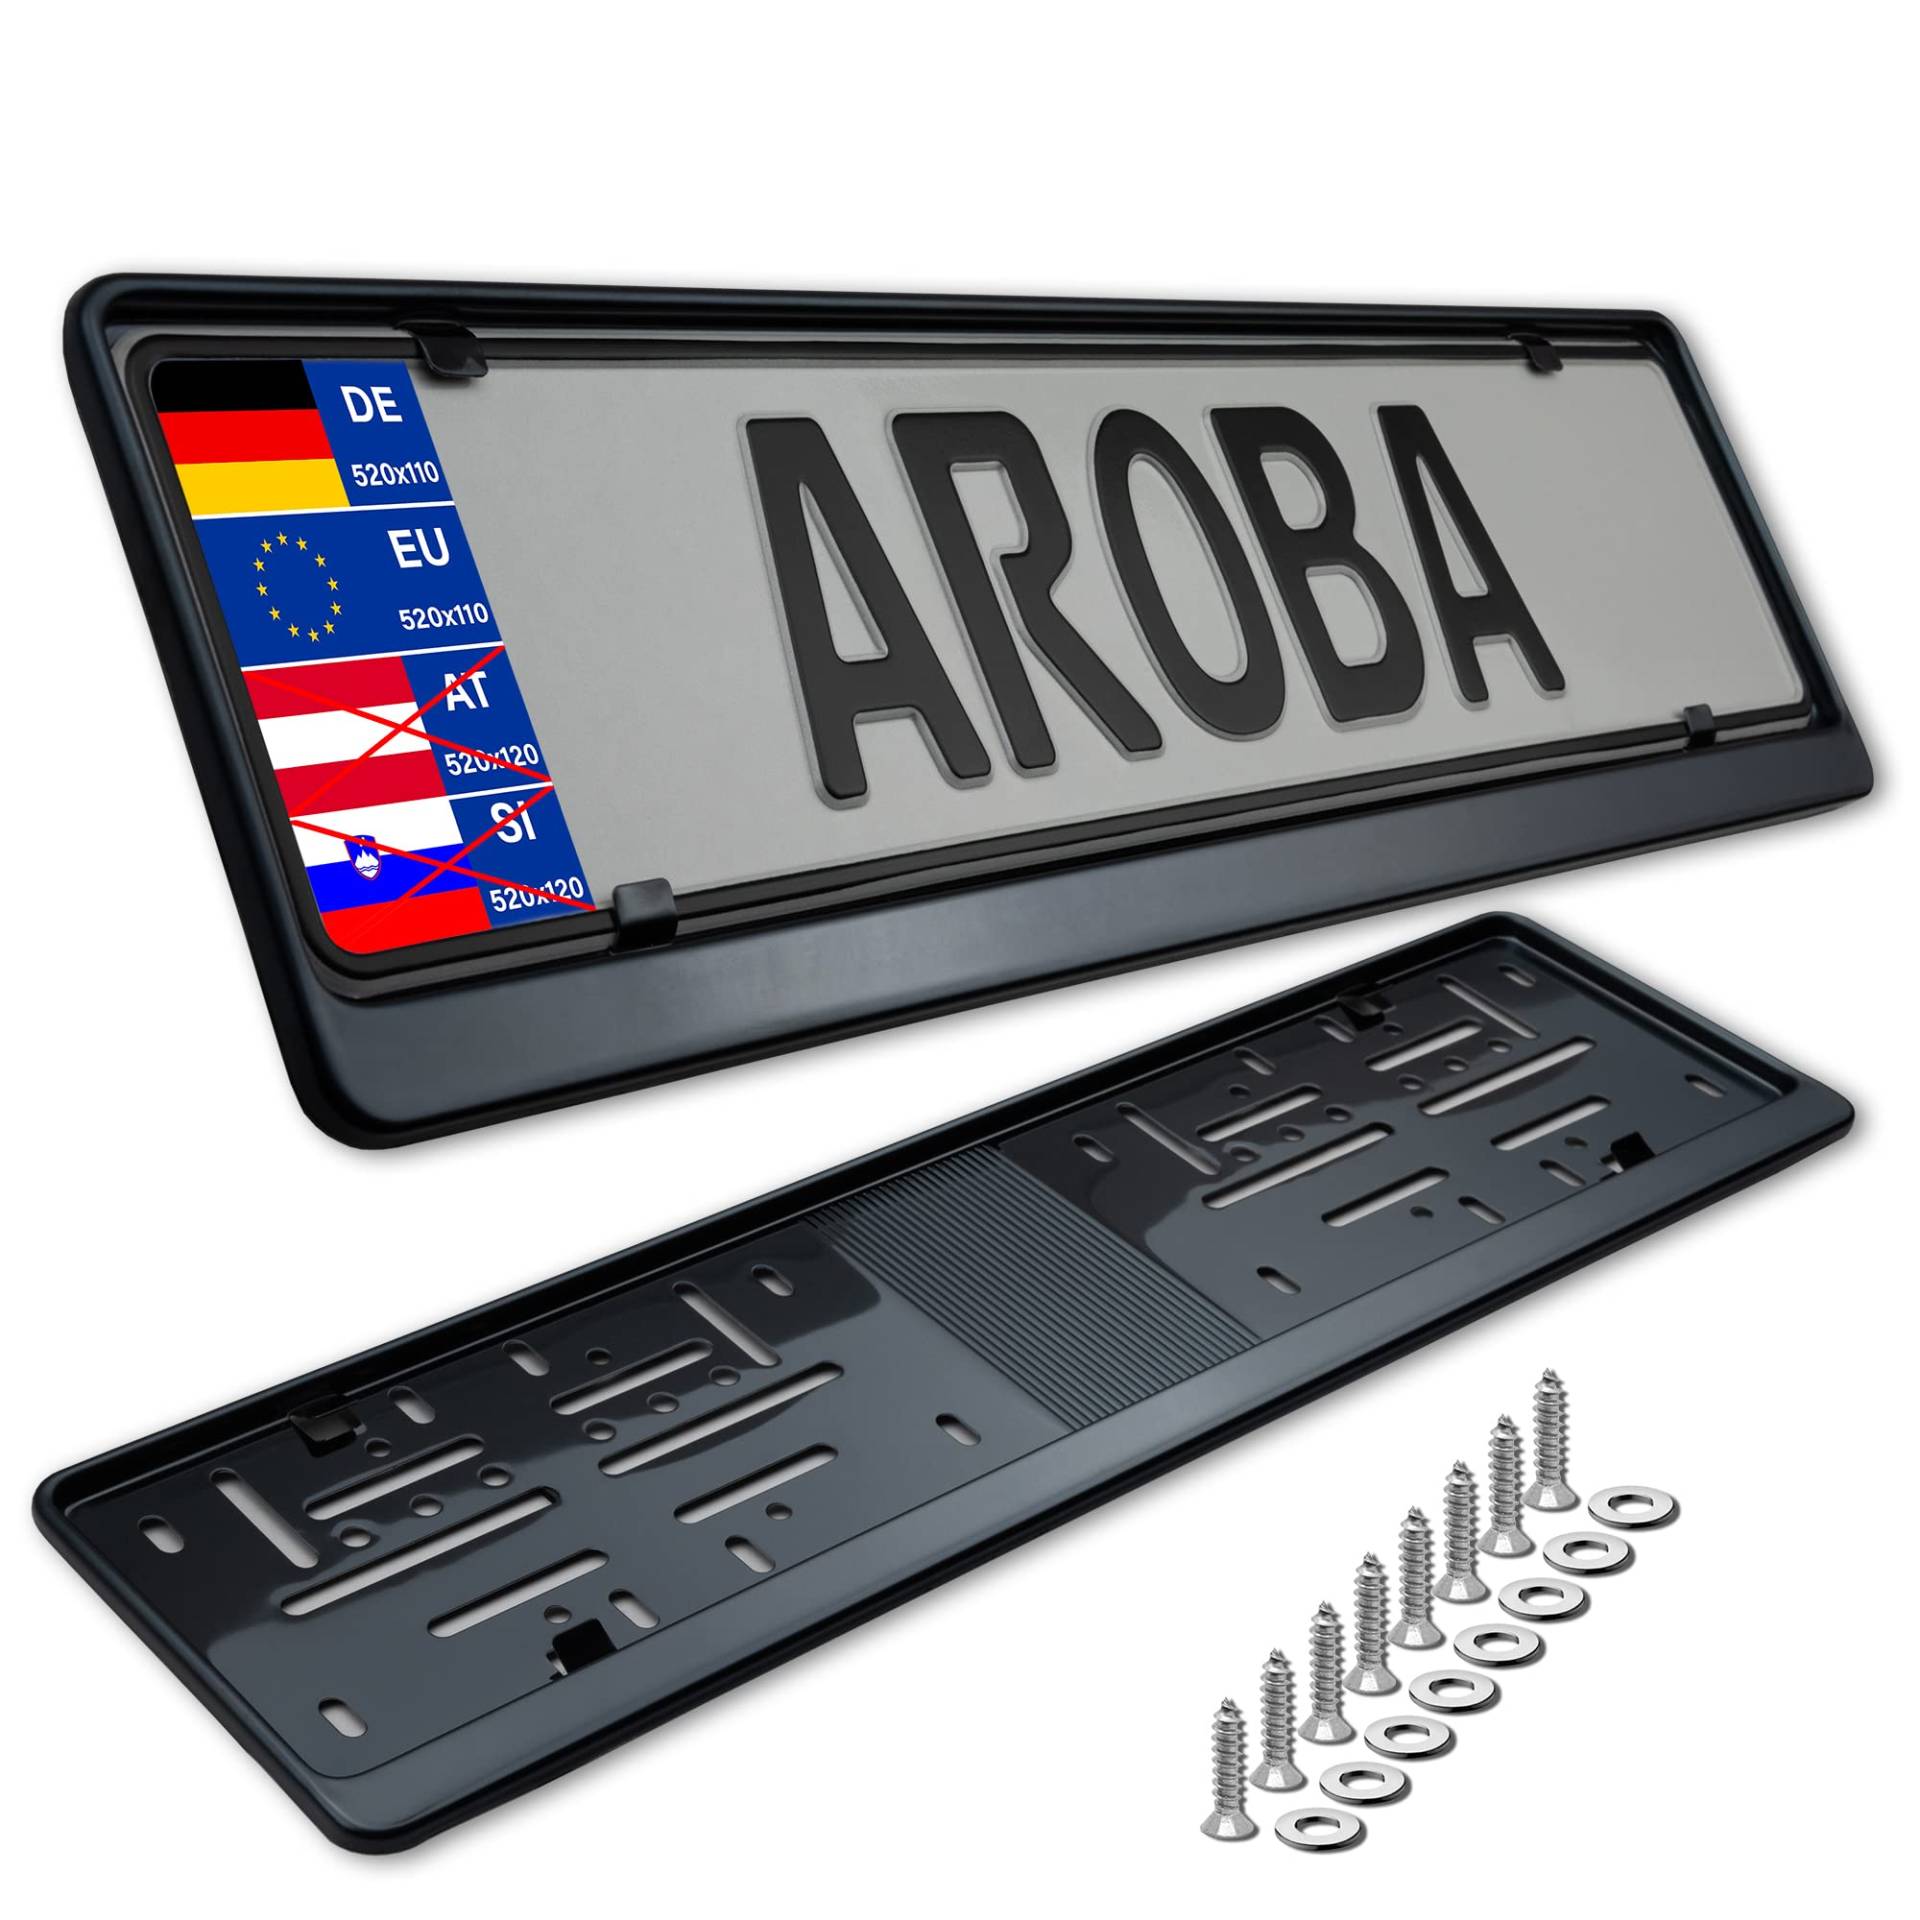 2X Premium Auto Kennzeichenhalter 100% Edelstahl SCHWARZ poliert (Black Chrome) für Deutschland und EU (Kennzeichen der Größe 520mm x 110mm) Nummernschildhalter Kennzeichenrahmen INOX V2A von AROBA